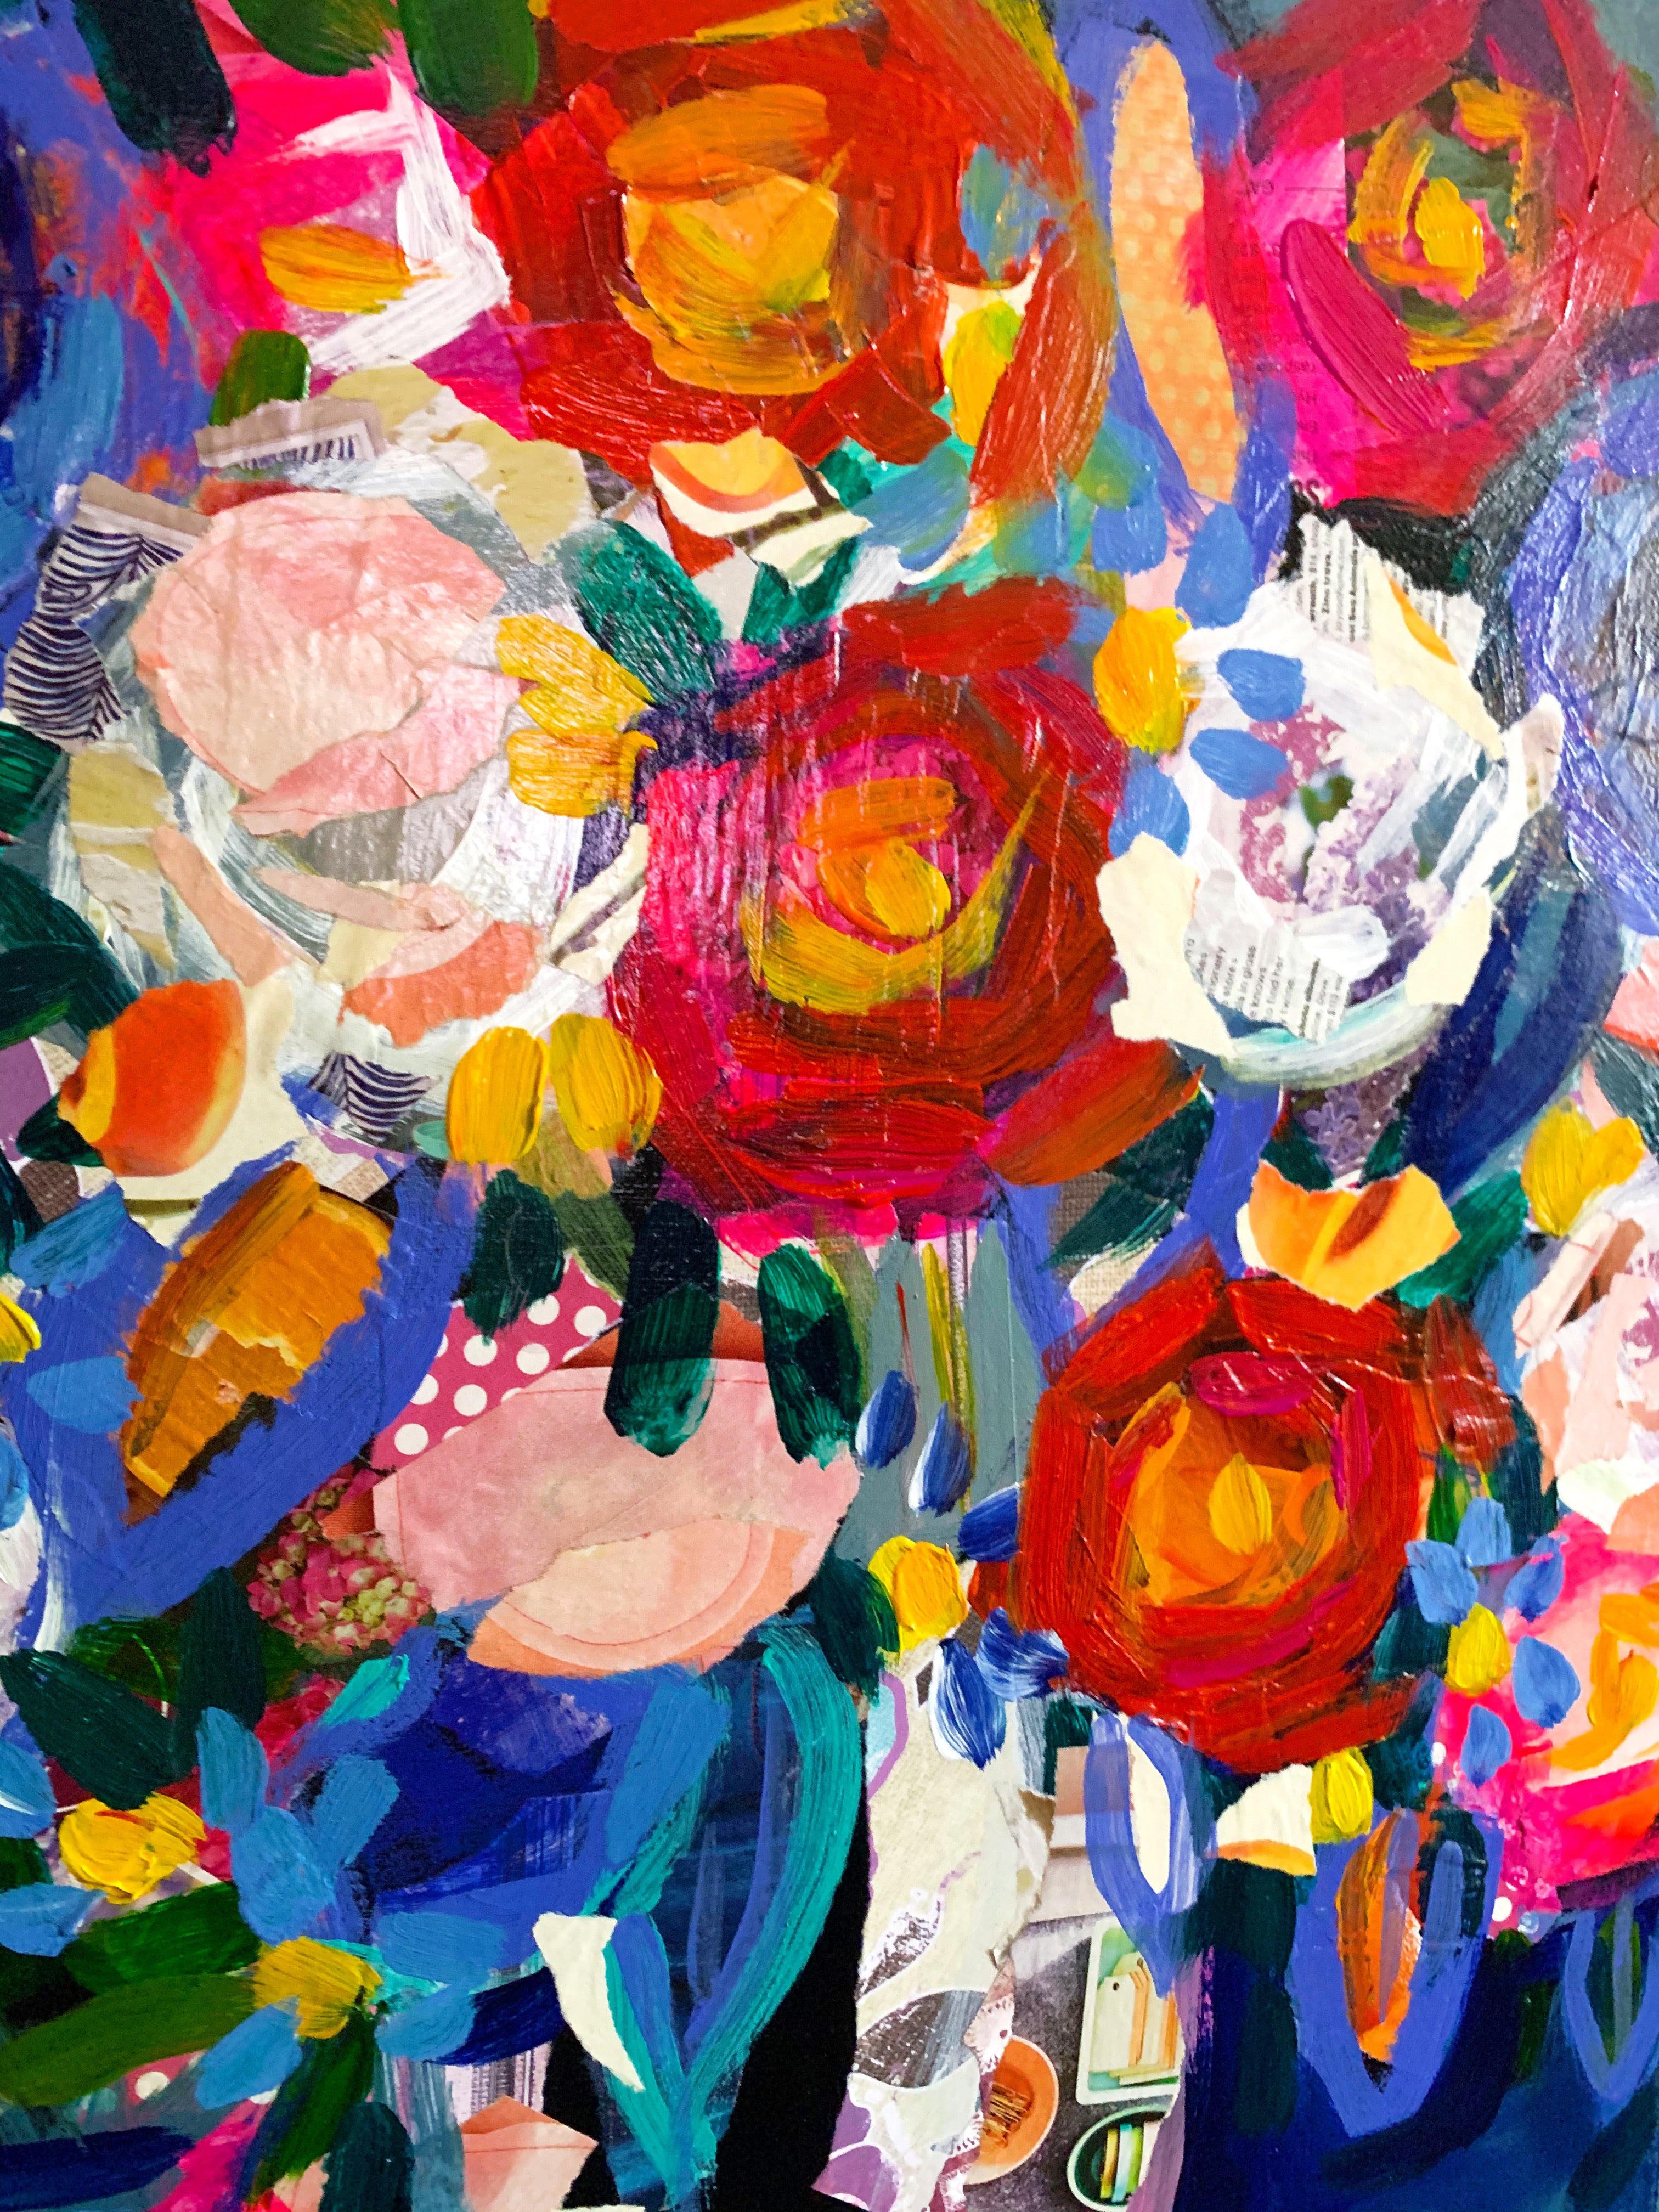 Floral Original Collage + Paint Artwork on Canvas 18”x24”